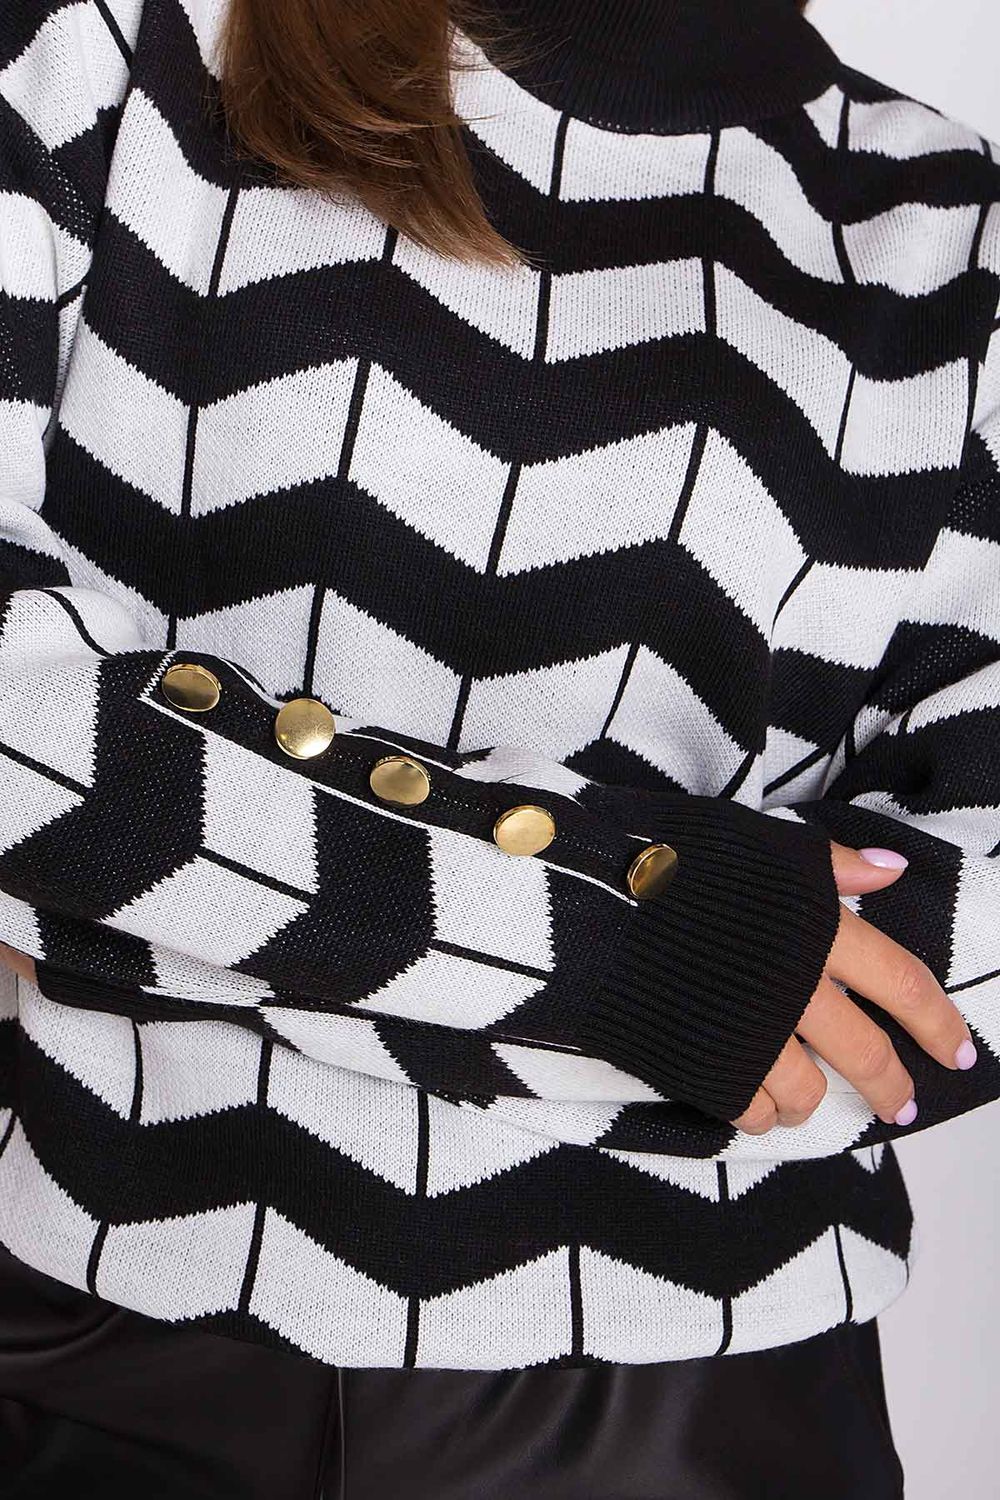 Женский шерстяной свитер с воротником-стойка черный - фото